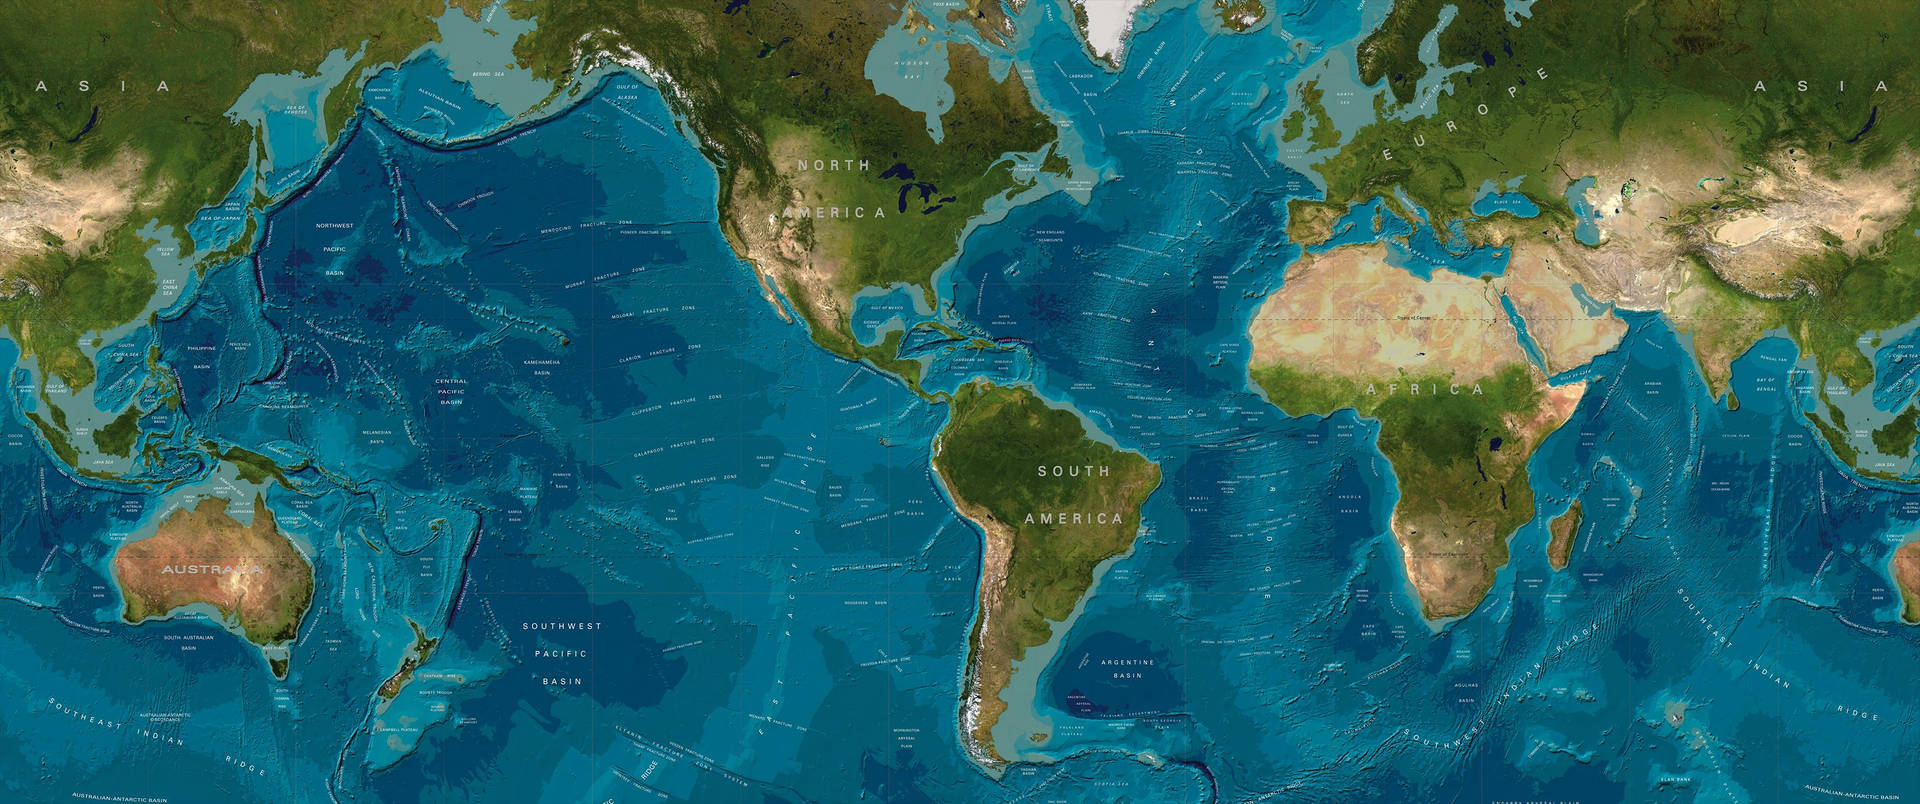 Ultrawide World Map